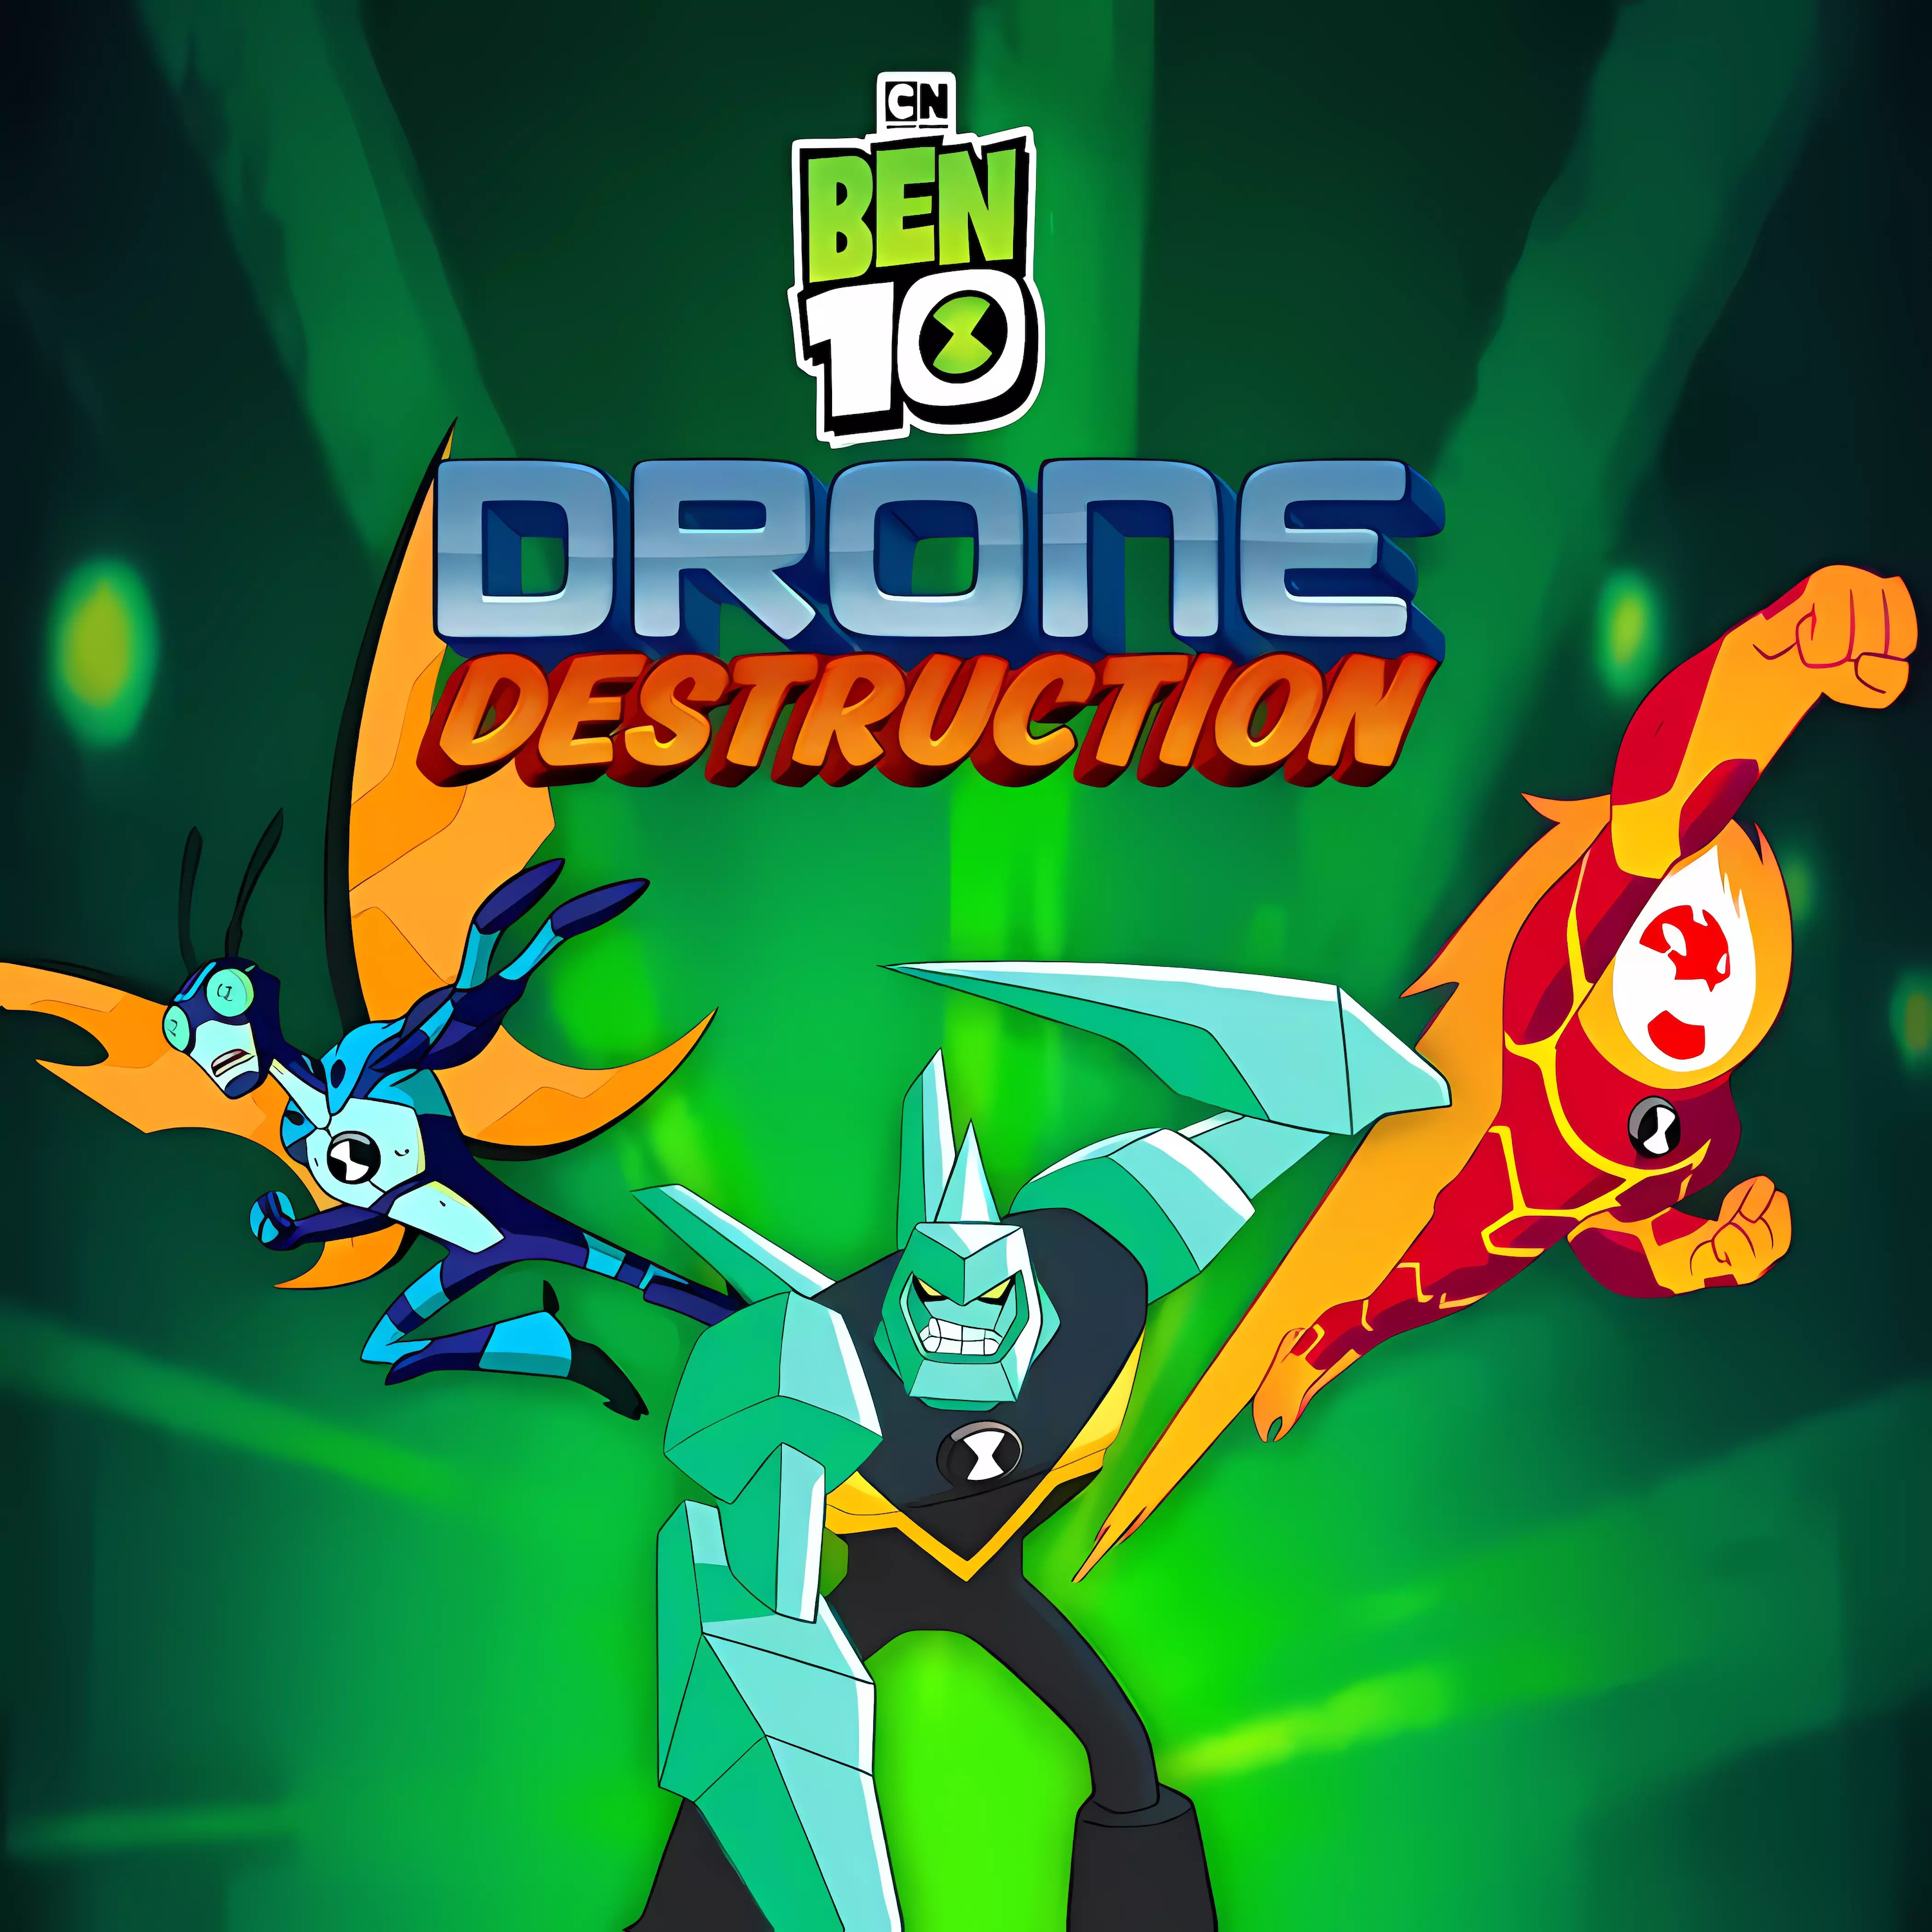 Drone Destruction: Ben 10